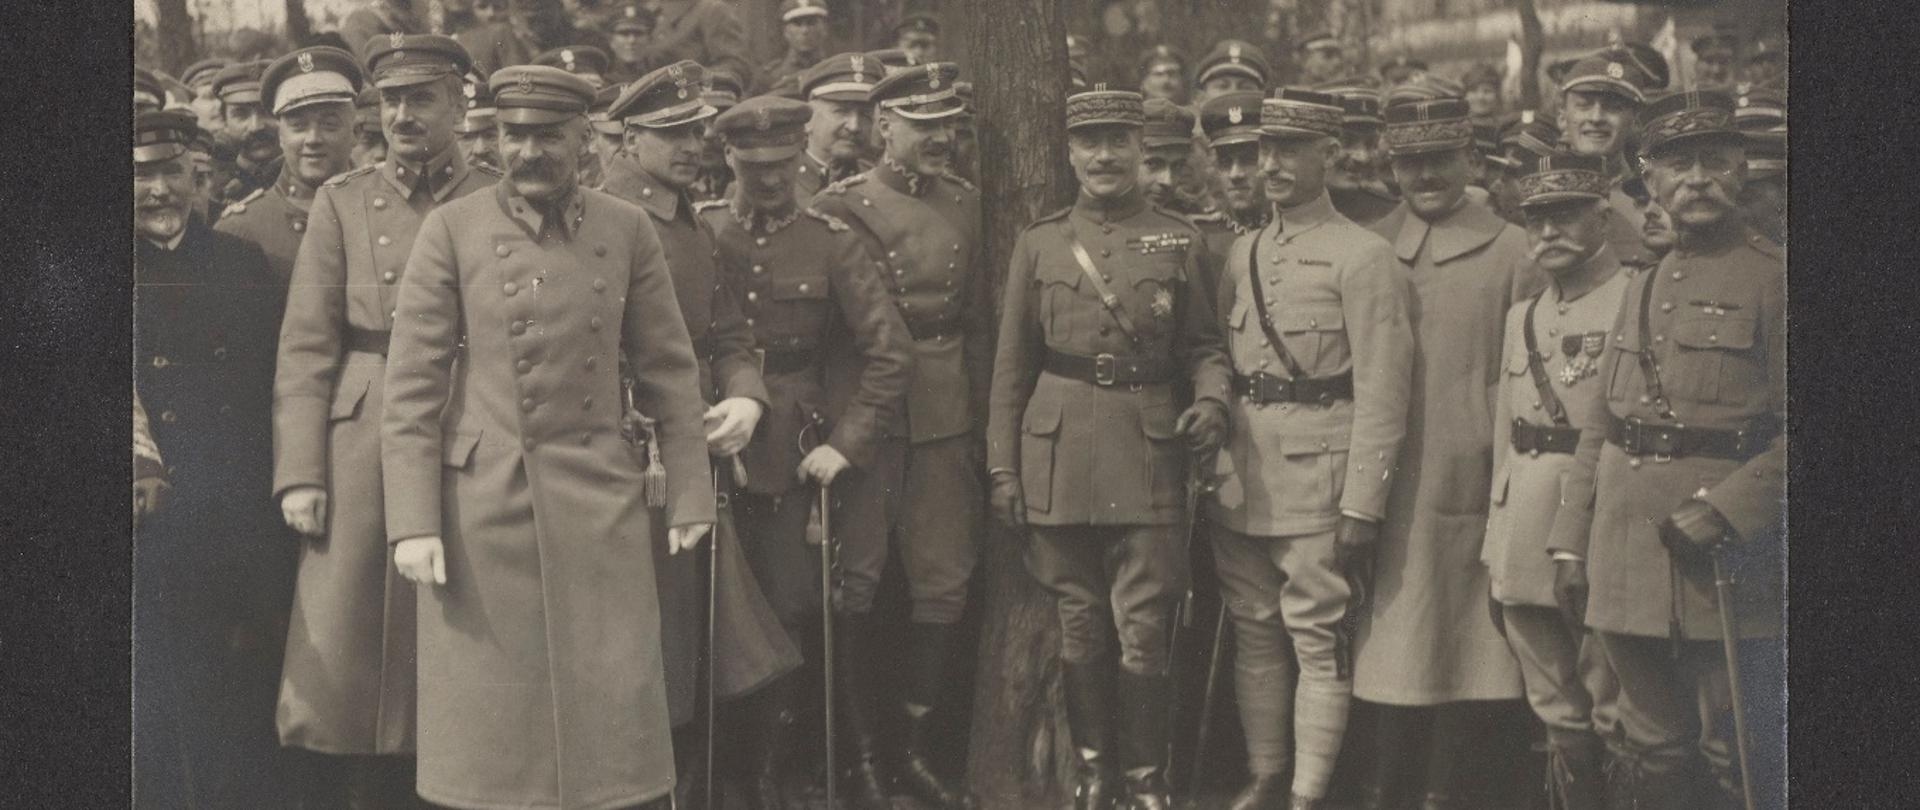 Naczelnik Państwa i Wódz Naczelny, Józef Piłsudski wśród żołnierzy polskich i alianckich, fotografia z 1920 roku
Źródło: Polona.pl
